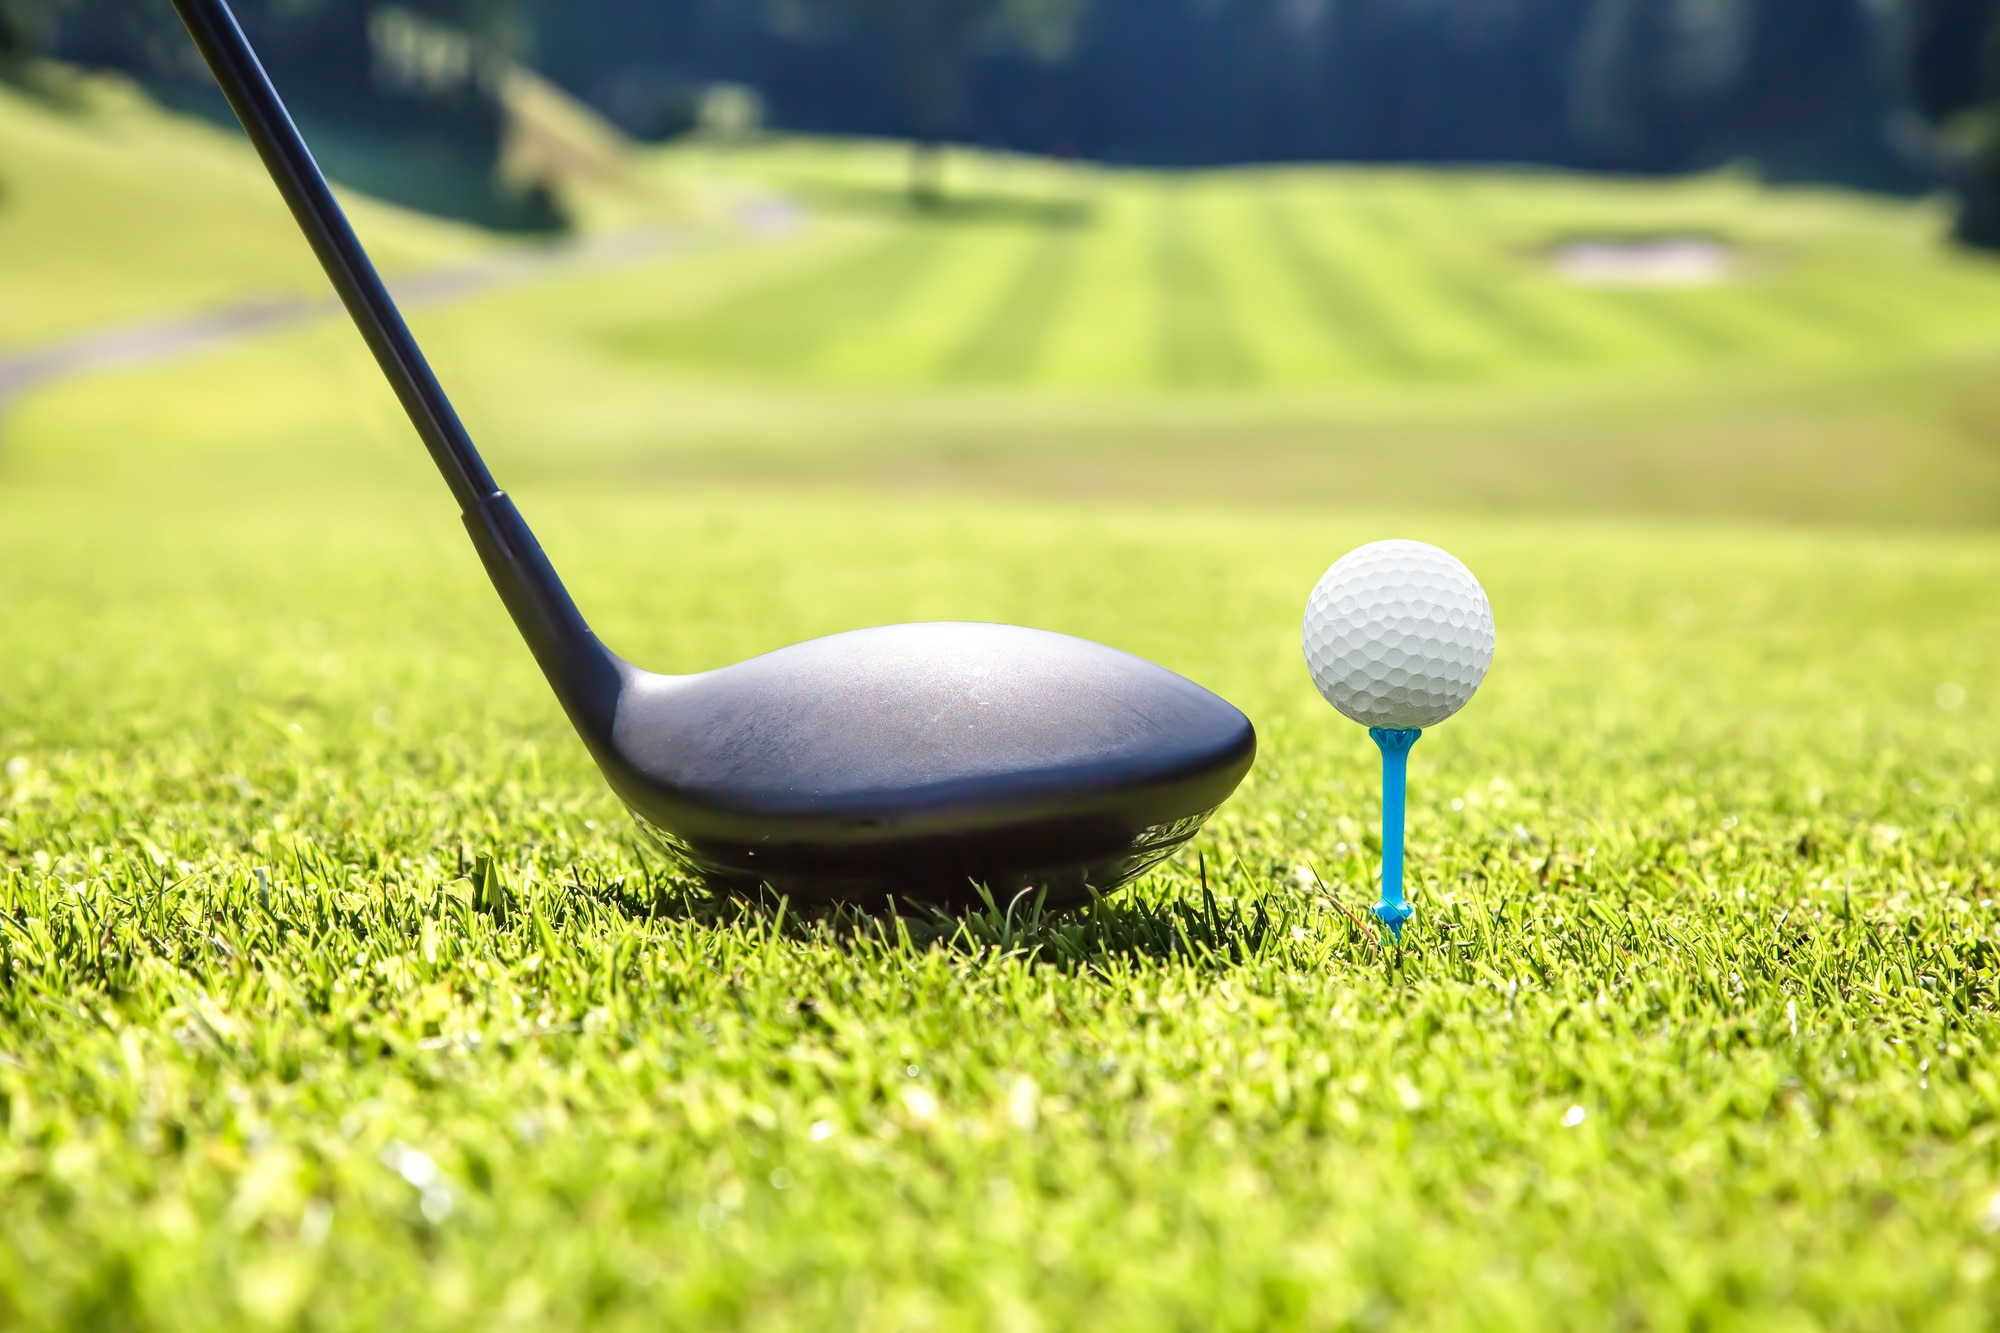 ゴルフ初心者向けゴルフセット賢い選び方 - ゴルフ用品はヴィクトリアゴルフ